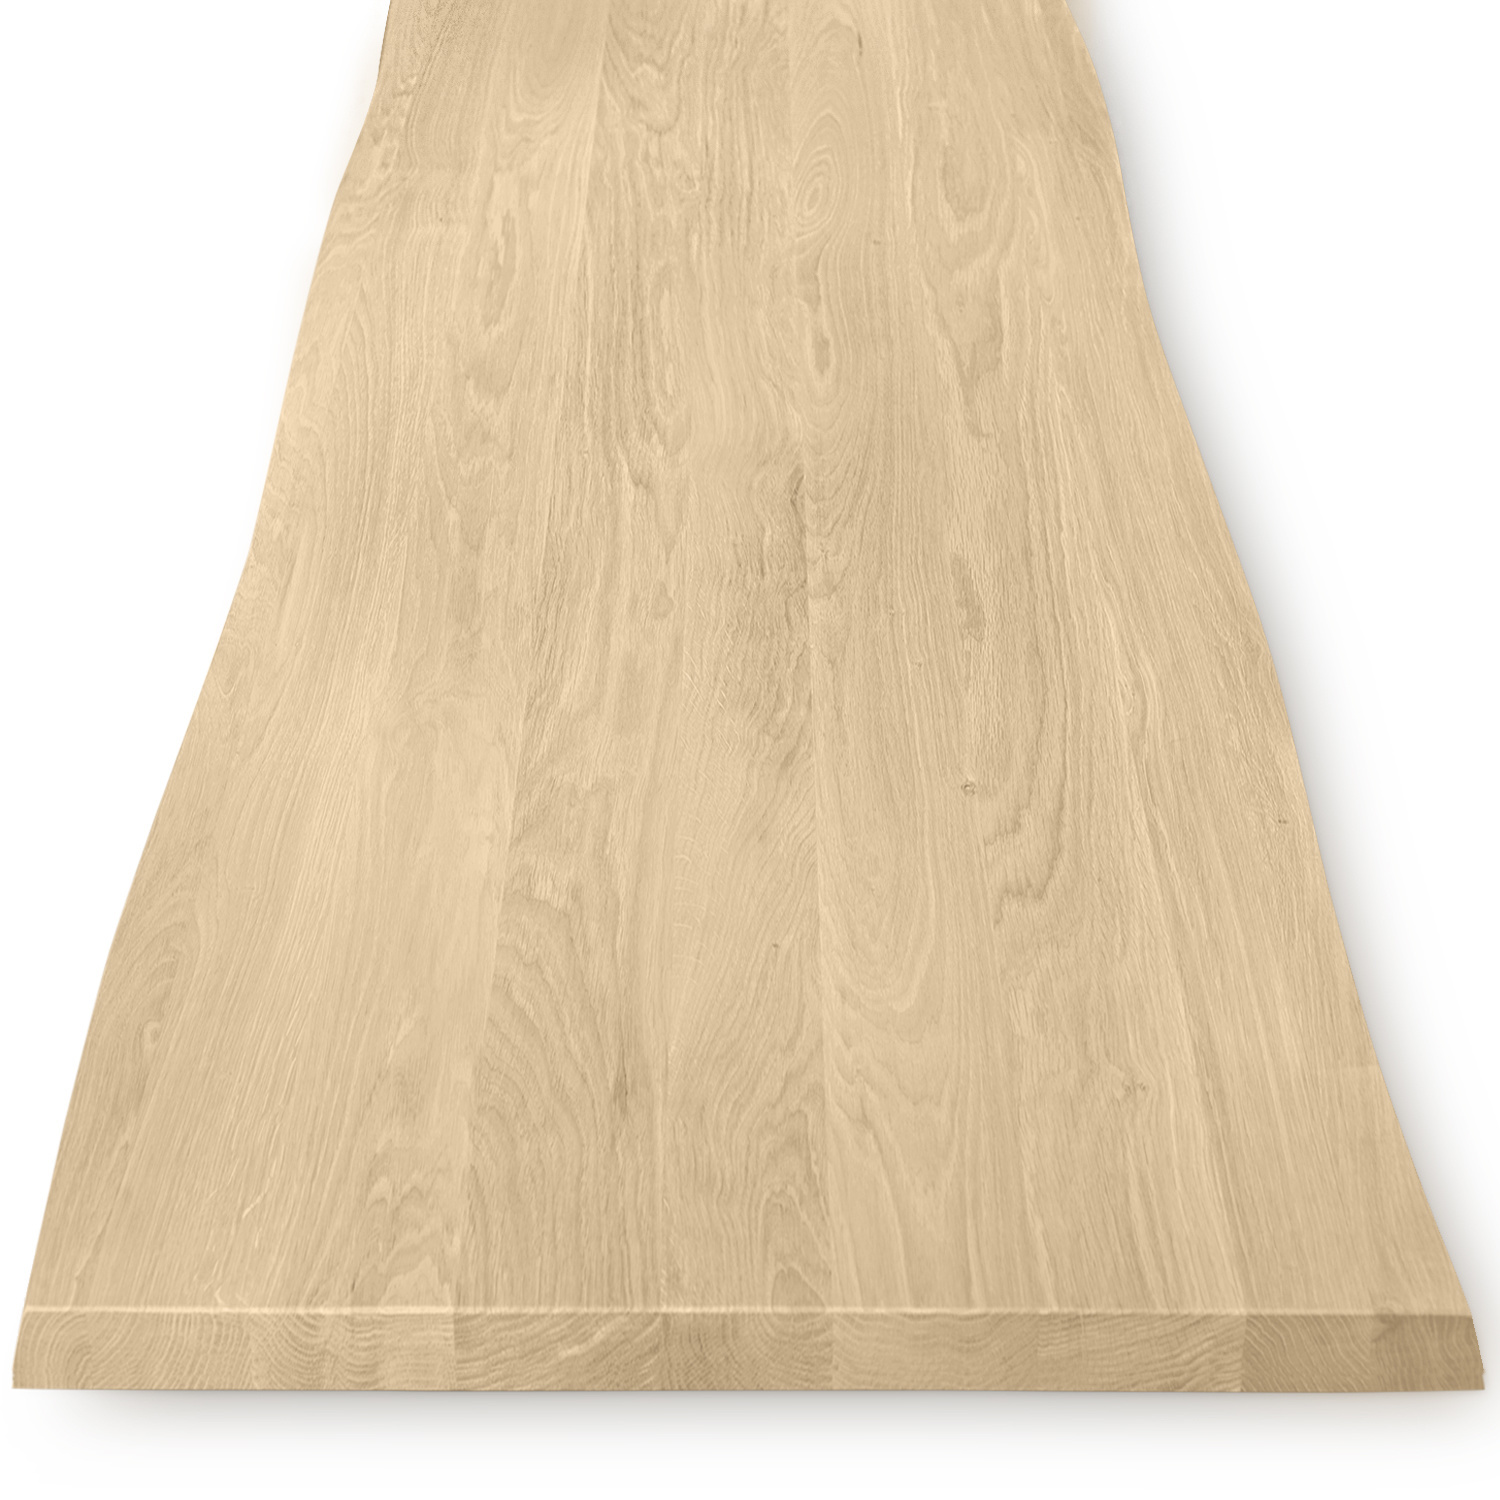  Eiken boomstam tafelblad op maat - 4 cm dik (1-laag) - met boomstam rand / waankant look - foutvrij Europees eikenhout - met brede lamellen (circa 10-12 cm) - verlijmd kd 8-12% - 50-120x50-248 cm